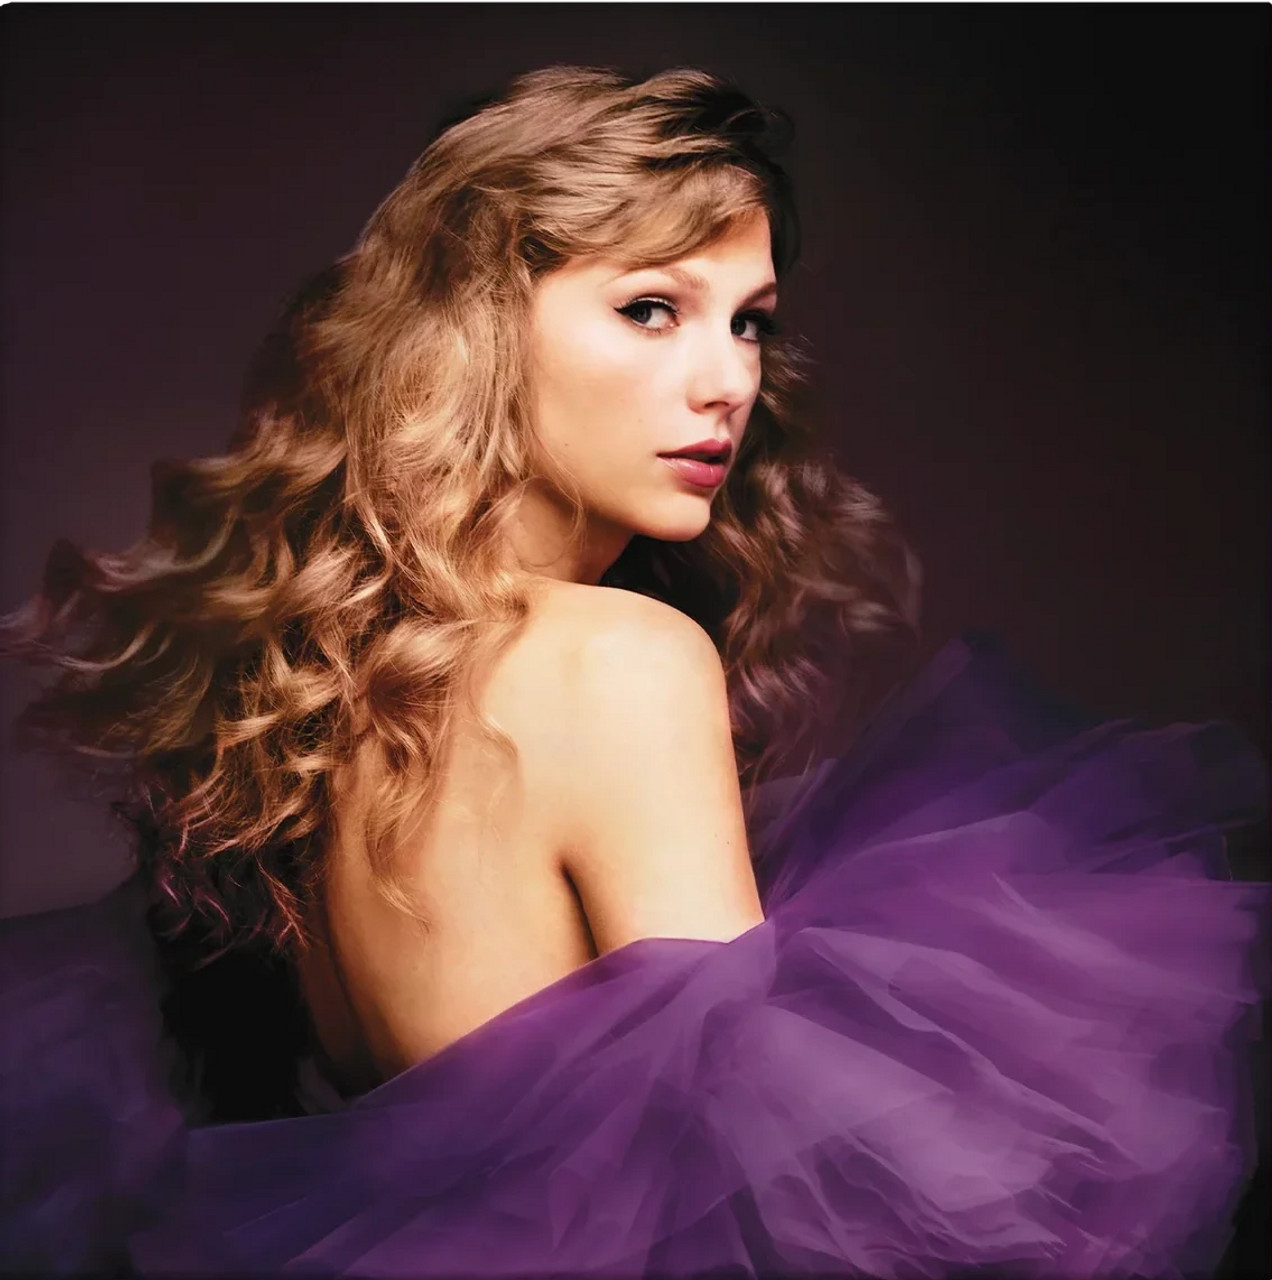 Speak Now - Taylor's Version